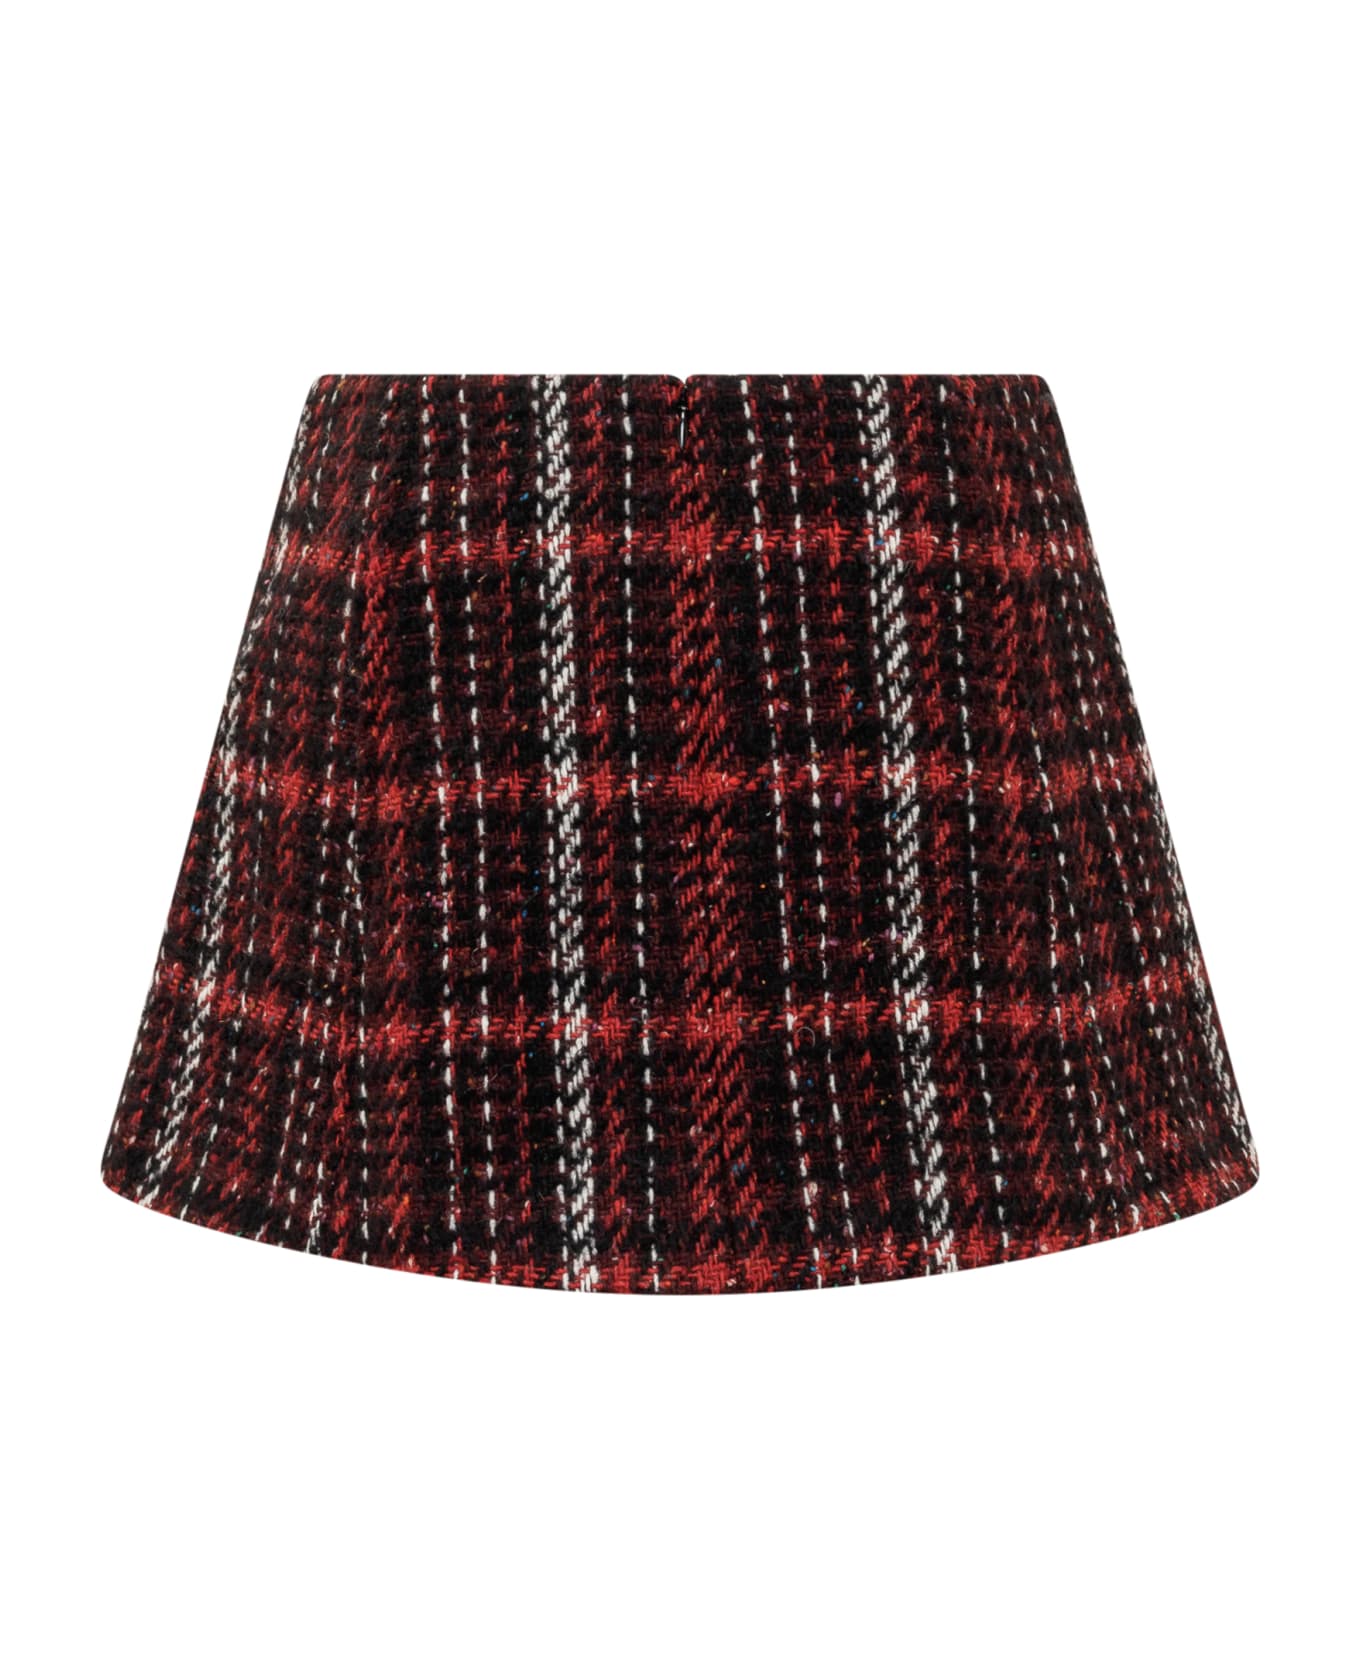 Marni Skirt With Print - RUBY